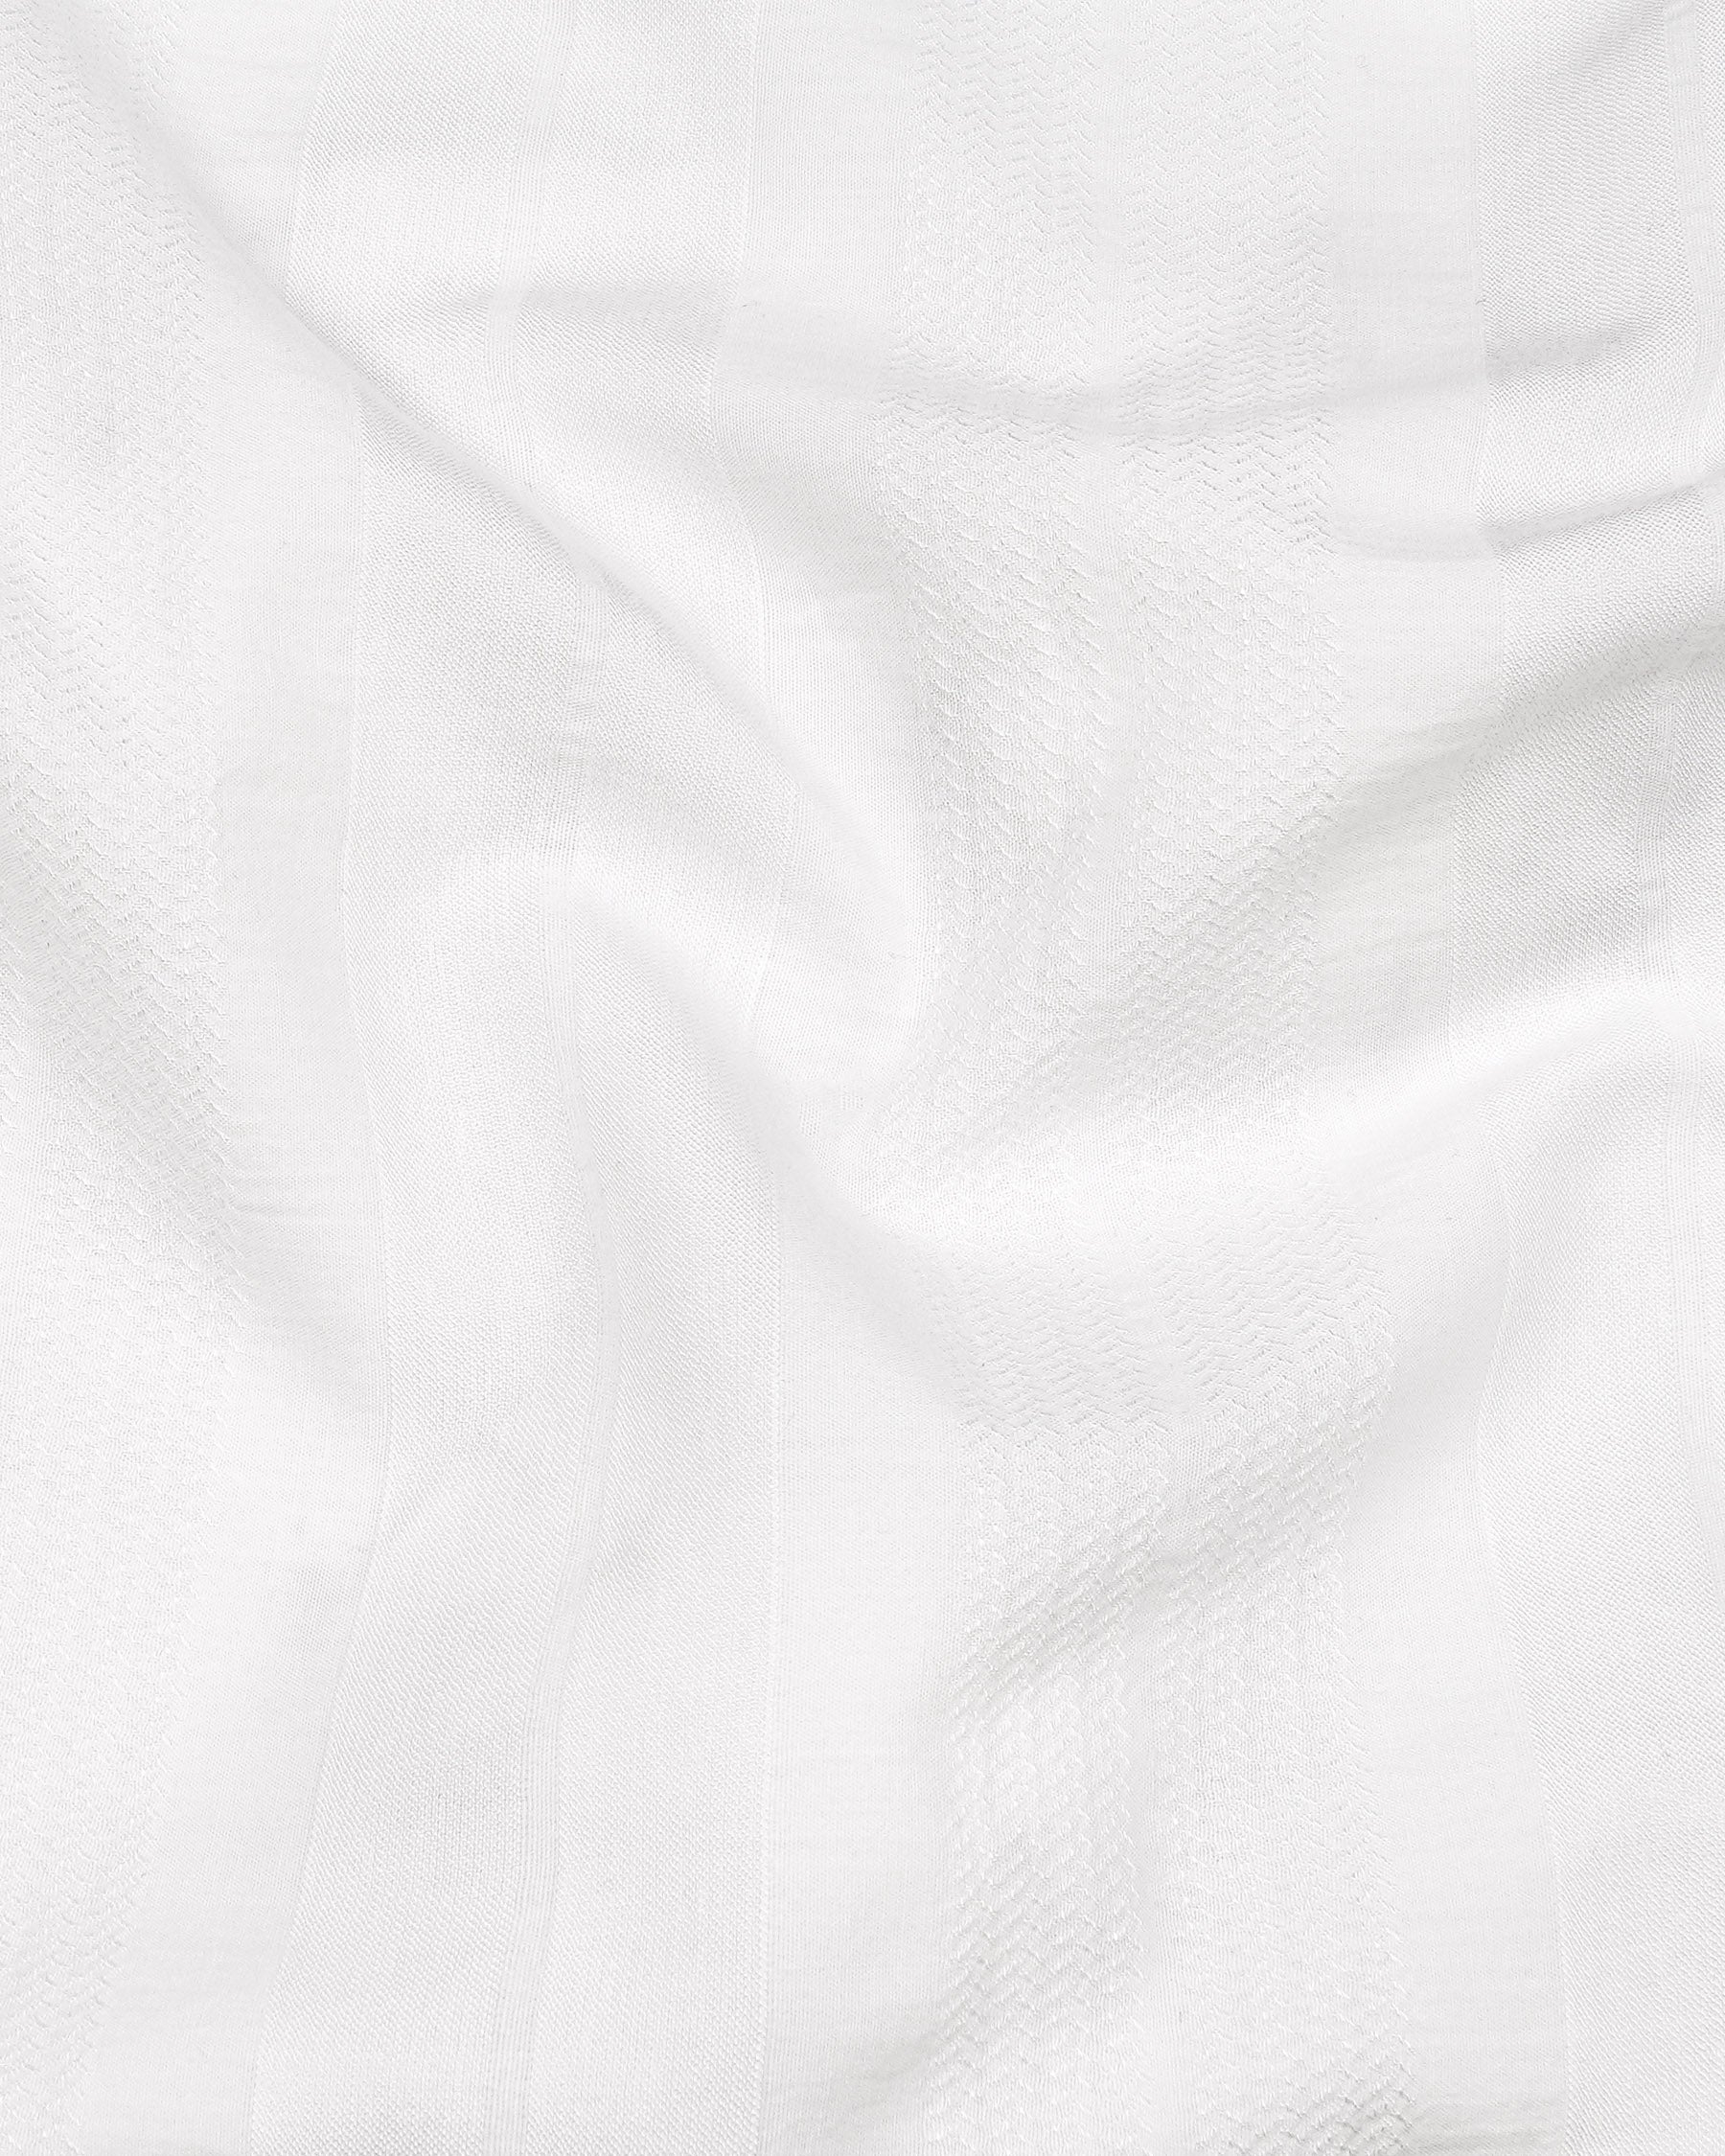 Bright White Dobby Textured Premium Giza Cotton Shirt 7895-BD-BLK -38,7895-BD-BLK -H-38,7895-BD-BLK -39,7895-BD-BLK -H-39,7895-BD-BLK -40,7895-BD-BLK -H-40,7895-BD-BLK -42,7895-BD-BLK -H-42,7895-BD-BLK -44,7895-BD-BLK -H-44,7895-BD-BLK -46,7895-BD-BLK -H-46,7895-BD-BLK -48,7895-BD-BLK -H-48,7895-BD-BLK -50,7895-BD-BLK -H-50,7895-BD-BLK -52,7895-BD-BLK -H-52